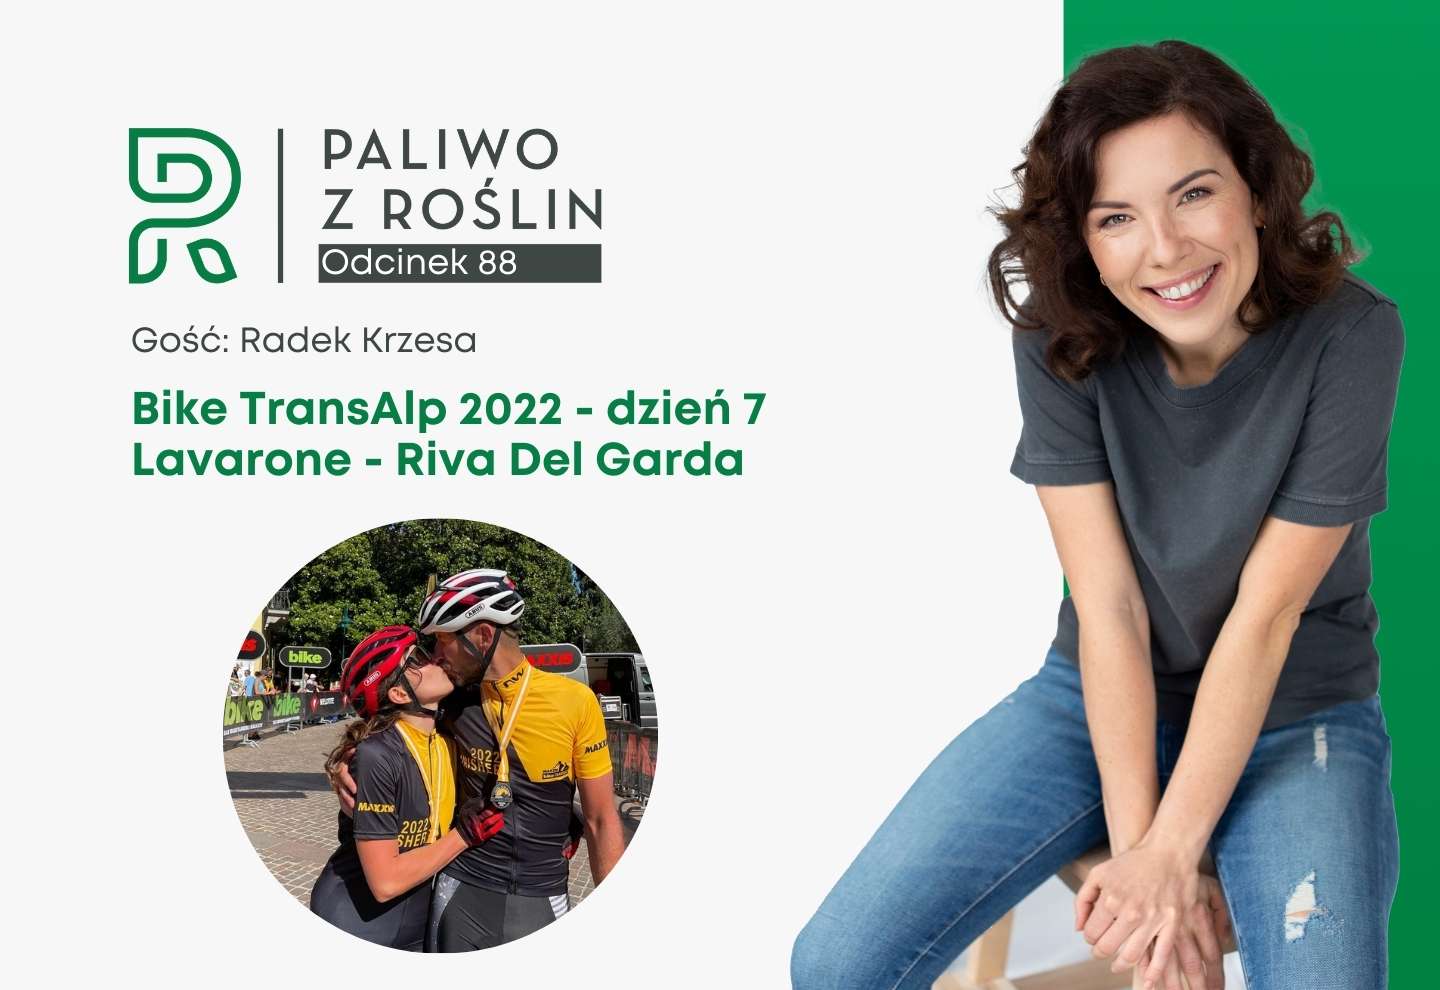 Bike TransAlp 2022 - dzień 7 - Lavarone - Riva Del Garda - finał - Paliwo z Roślin